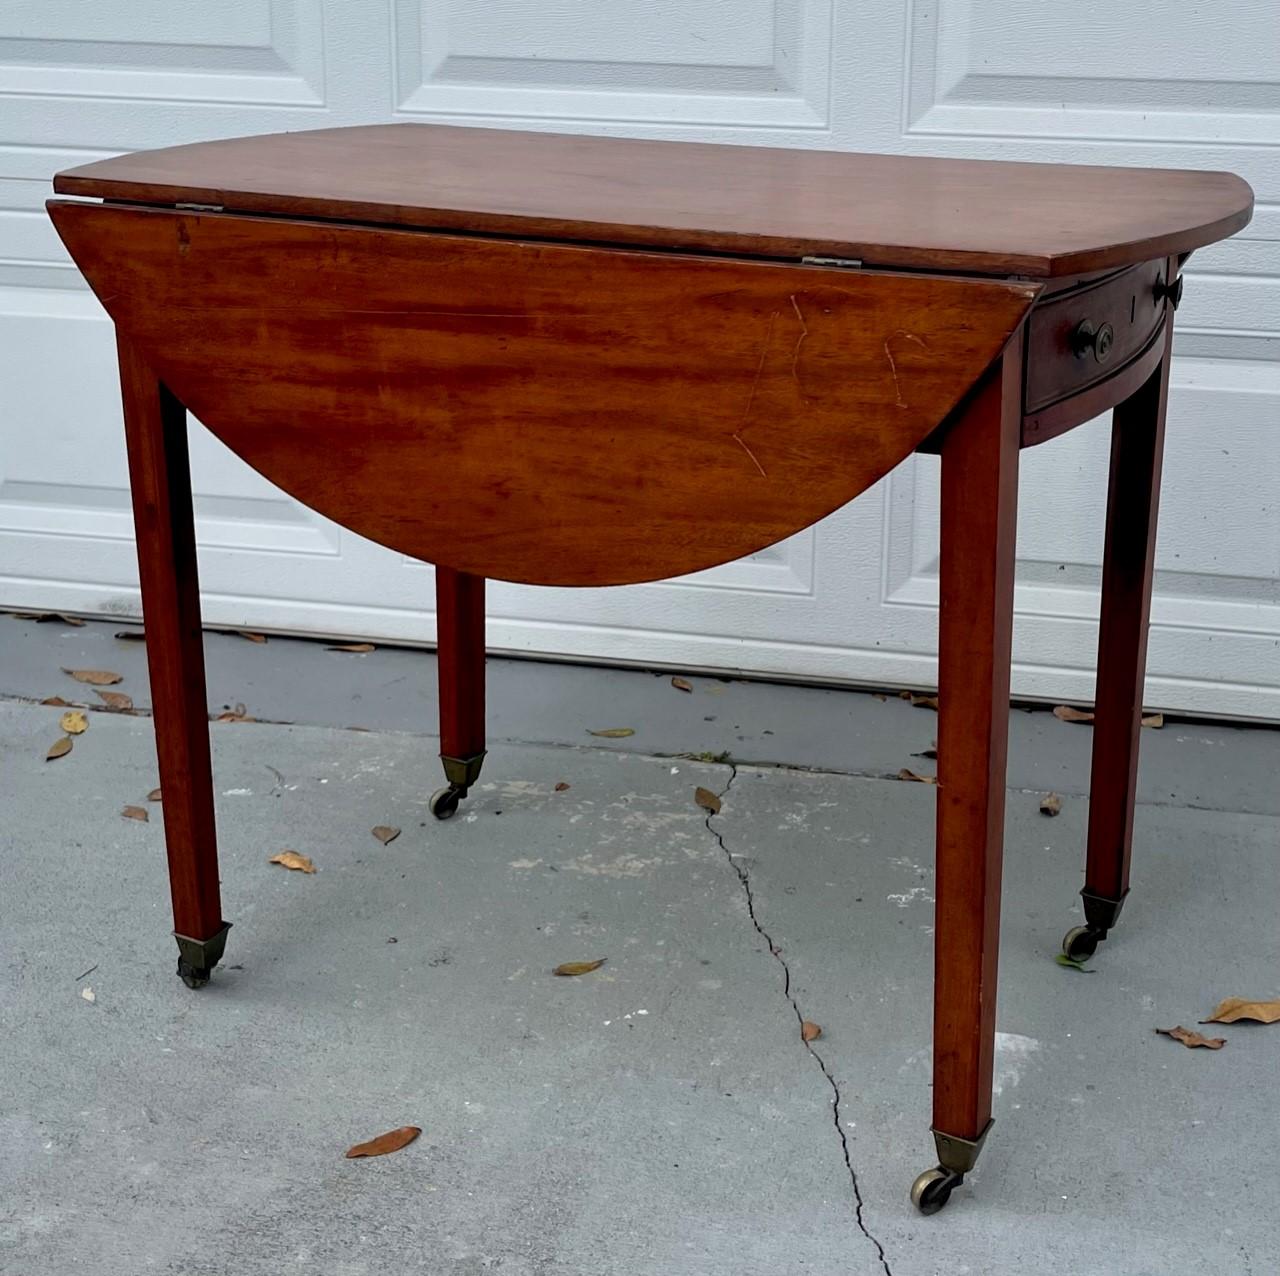 Englischer Pembroke-Tisch aus Mahagoni des frühen 19. Jahrhunderts.

Ovaler Pembroke-Beistelltisch aus Mahagoni des frühen 19. Jahrhunderts. Er verfügt über zwei ausklappbare Blätter, die von klappbaren Halterungen über einer einzelnen Schublade mit